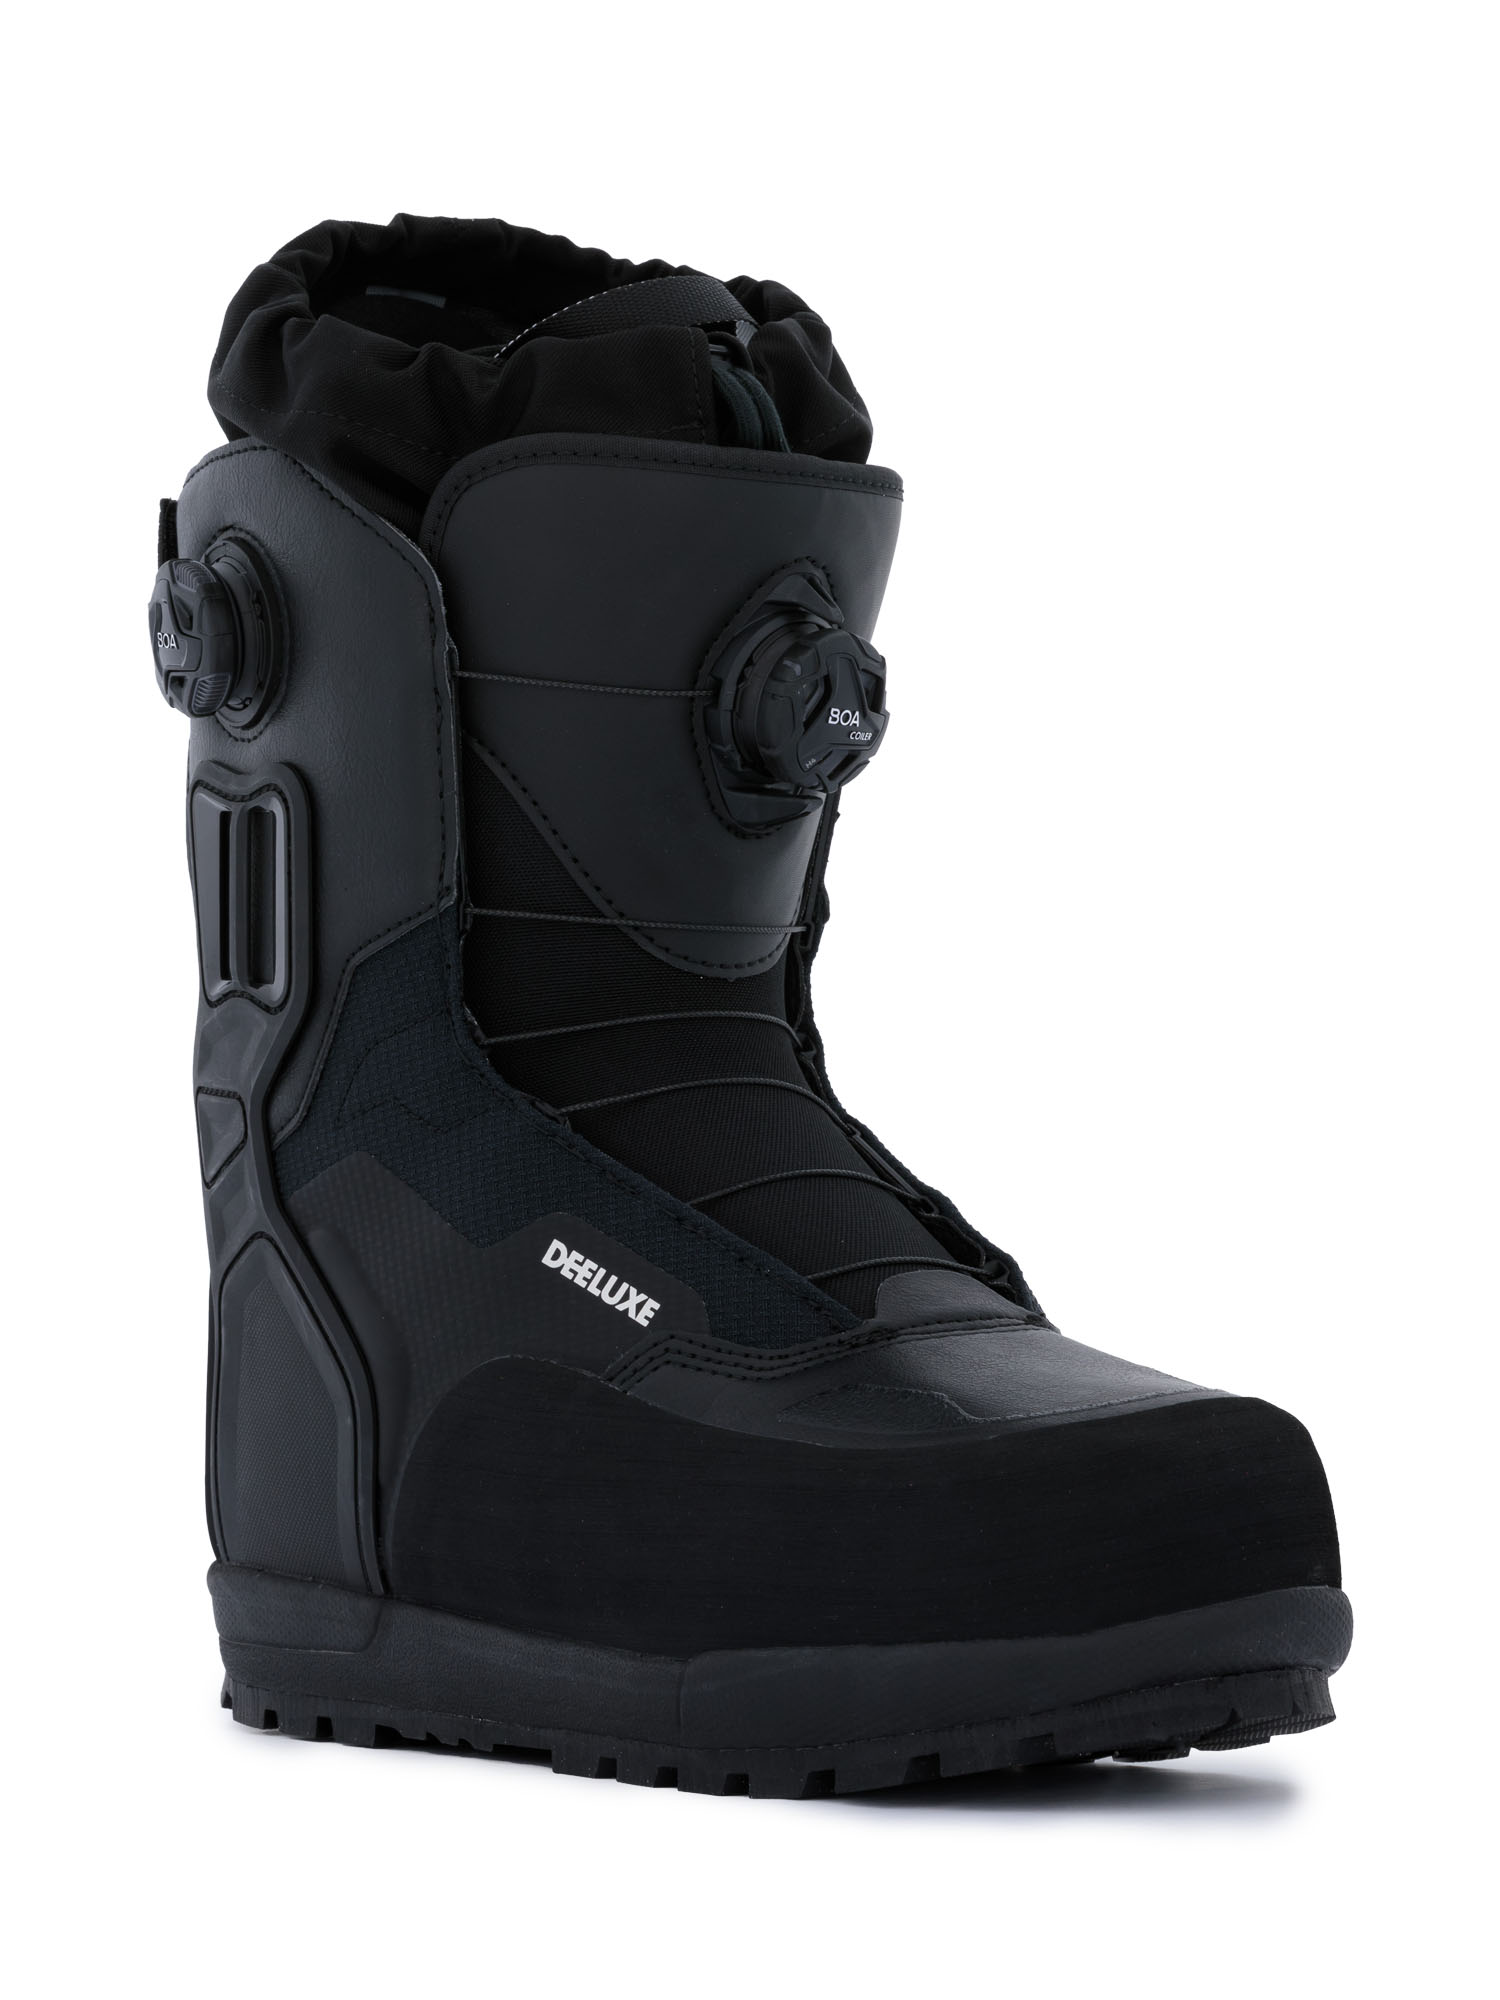 Ботинки для сноуборда DEELUXE XV Black